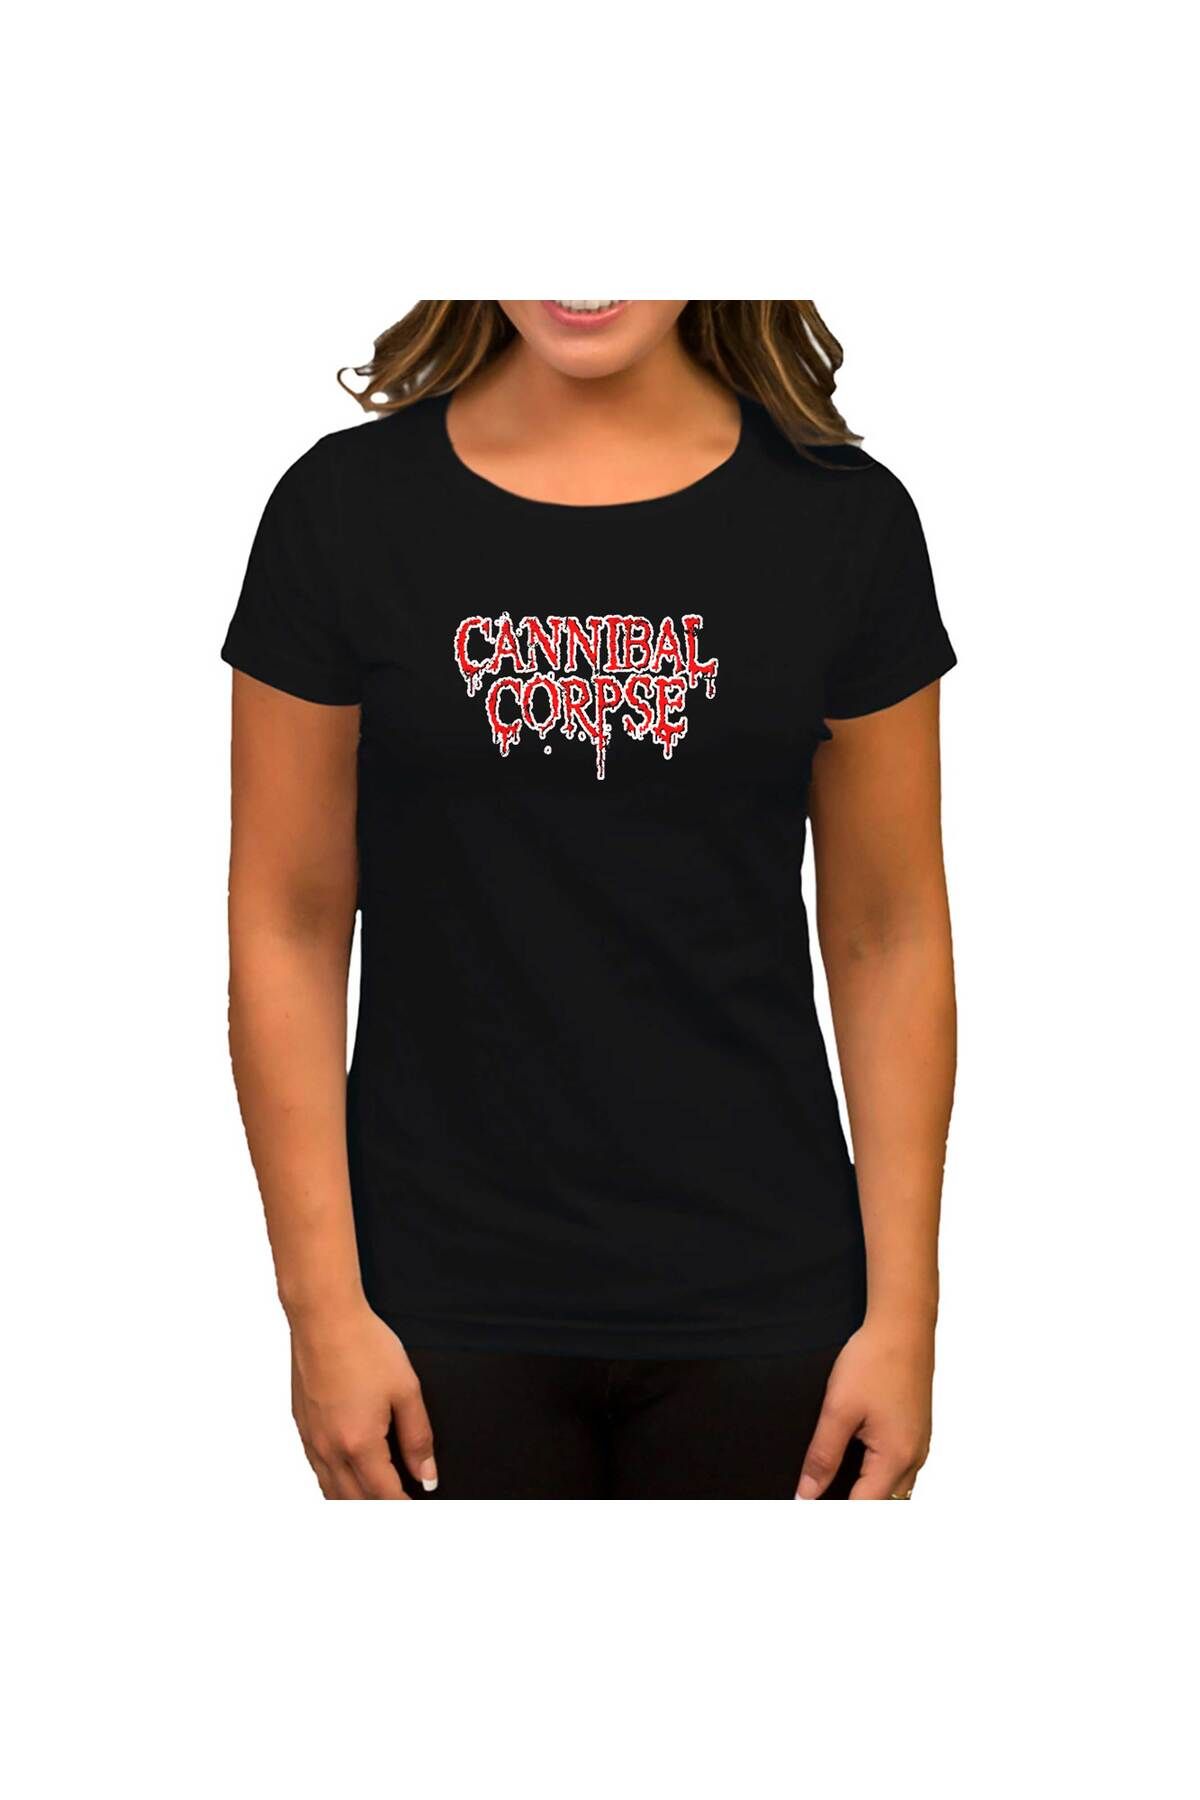 Genel Markalar Cannibal Corpse CRY Siyah Kadın Tişört XS Beden